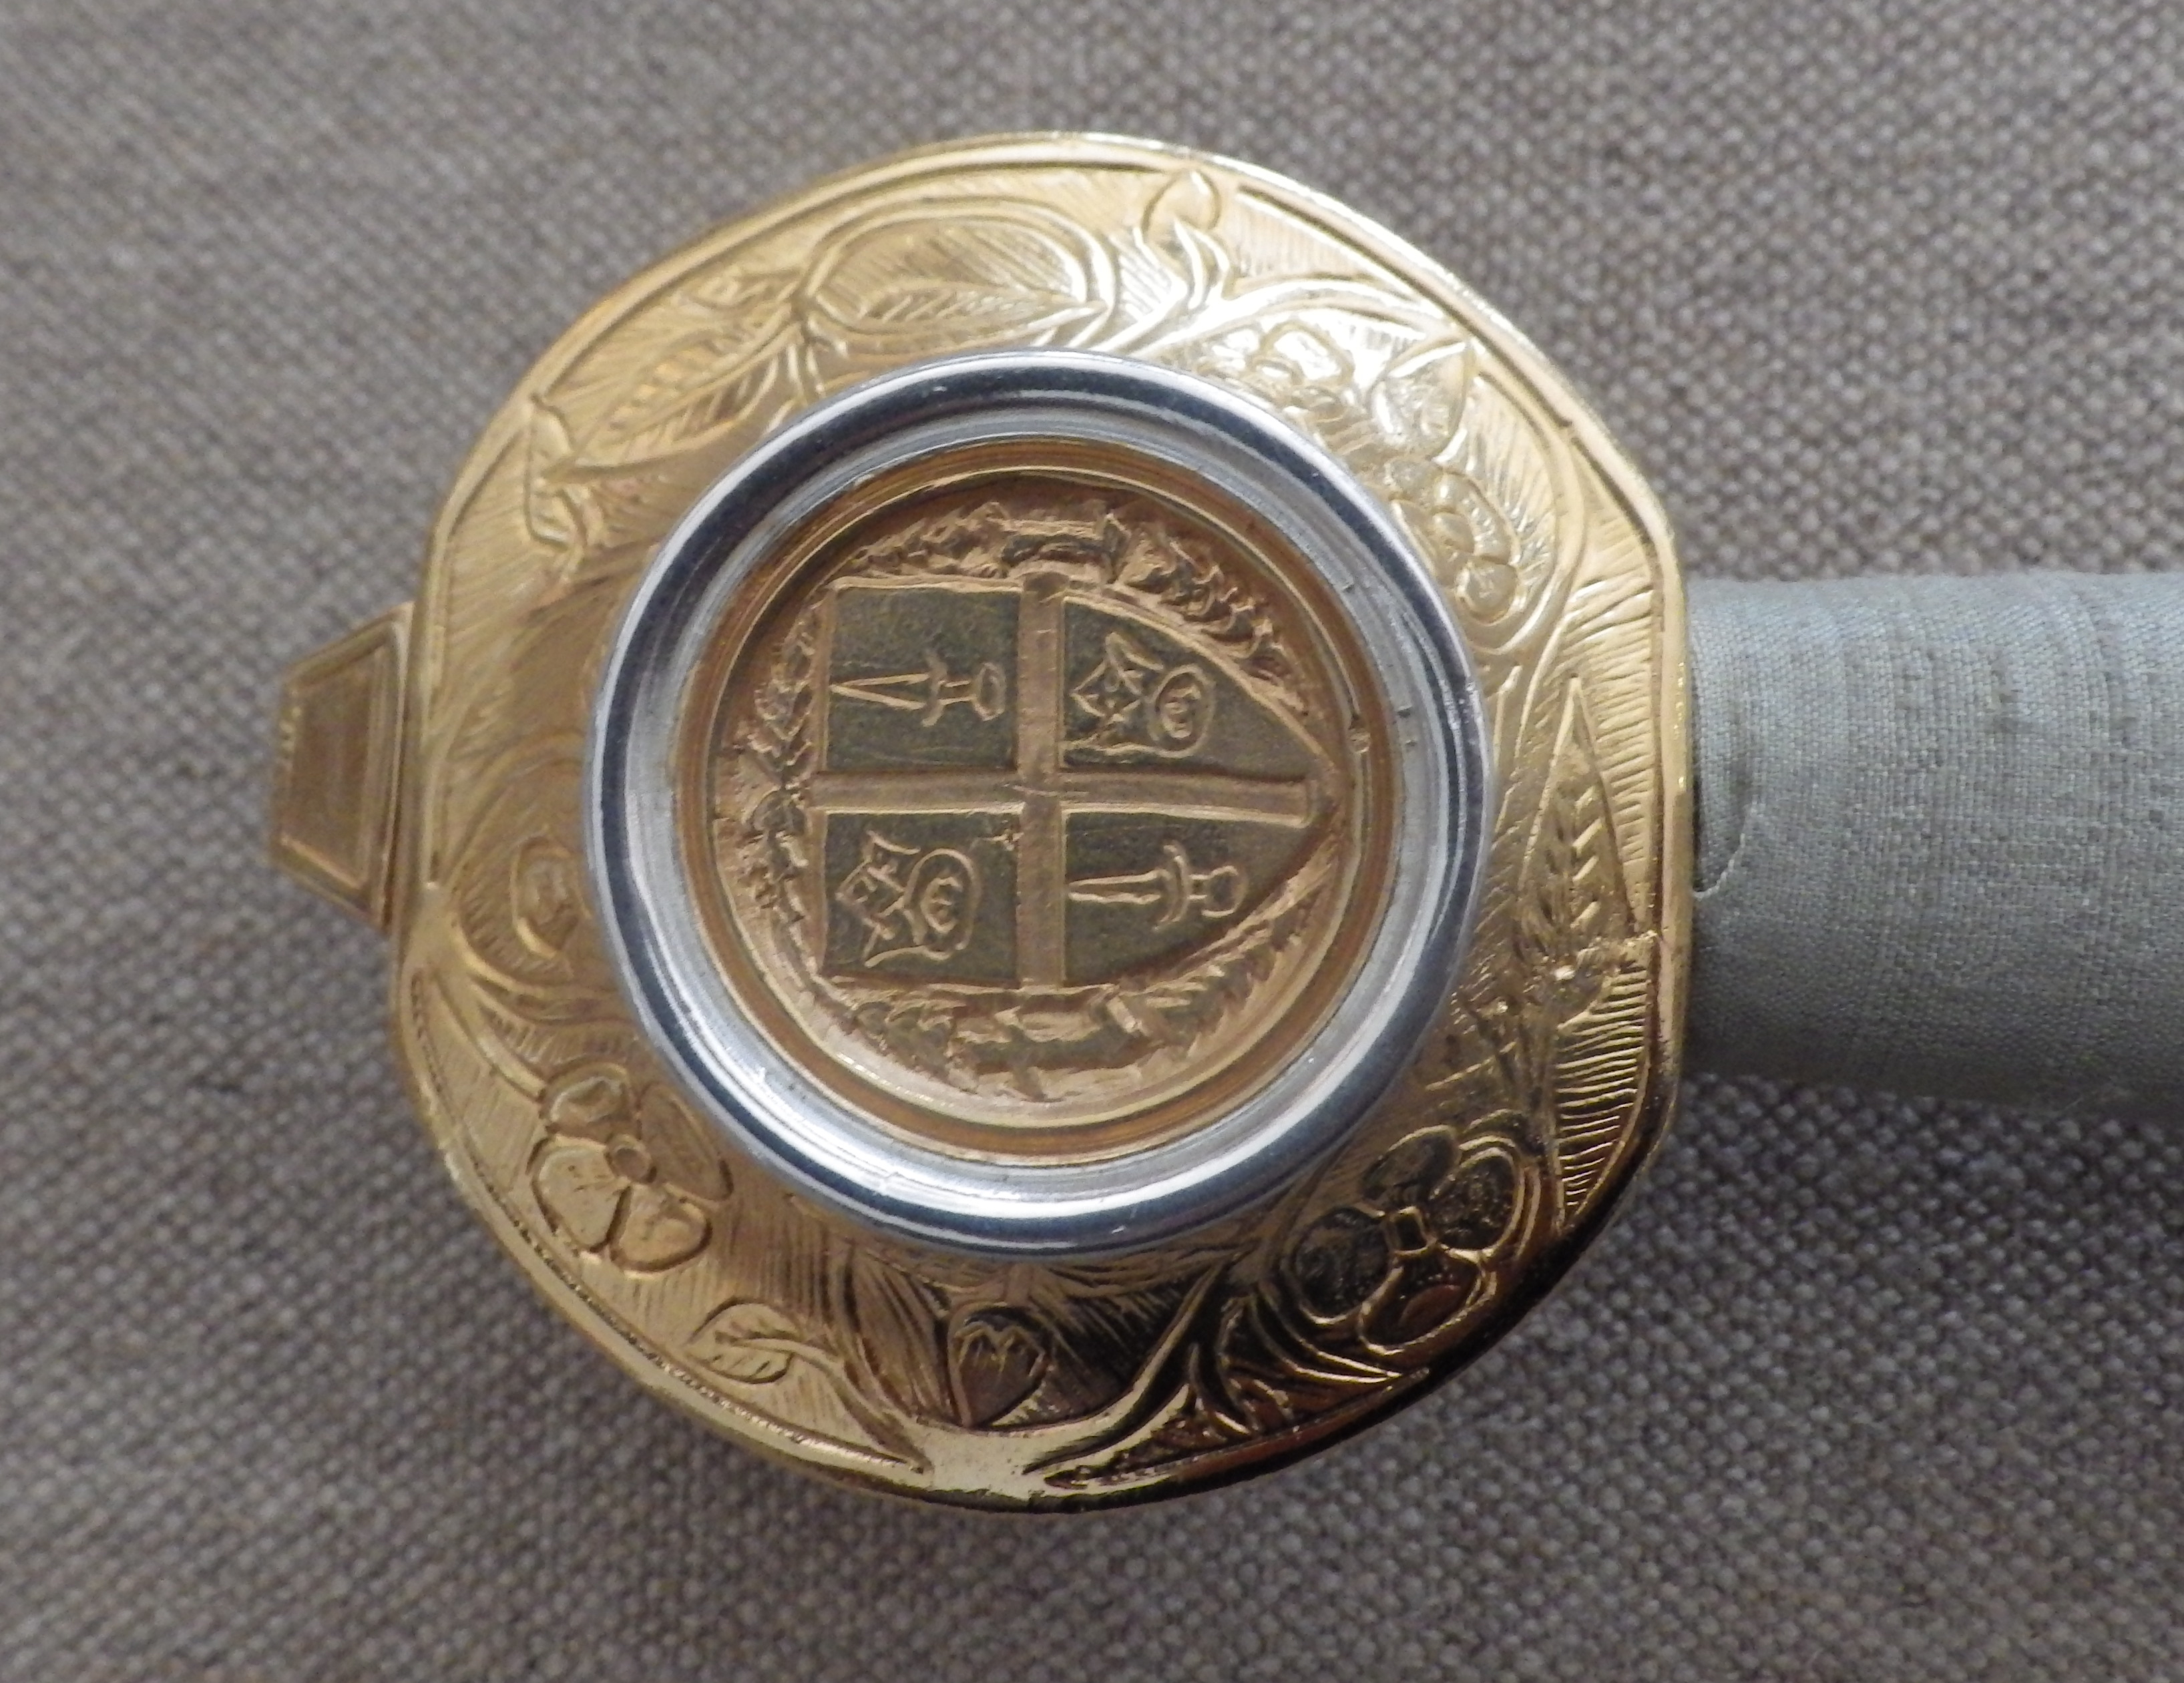 Detail of the sword pommel.